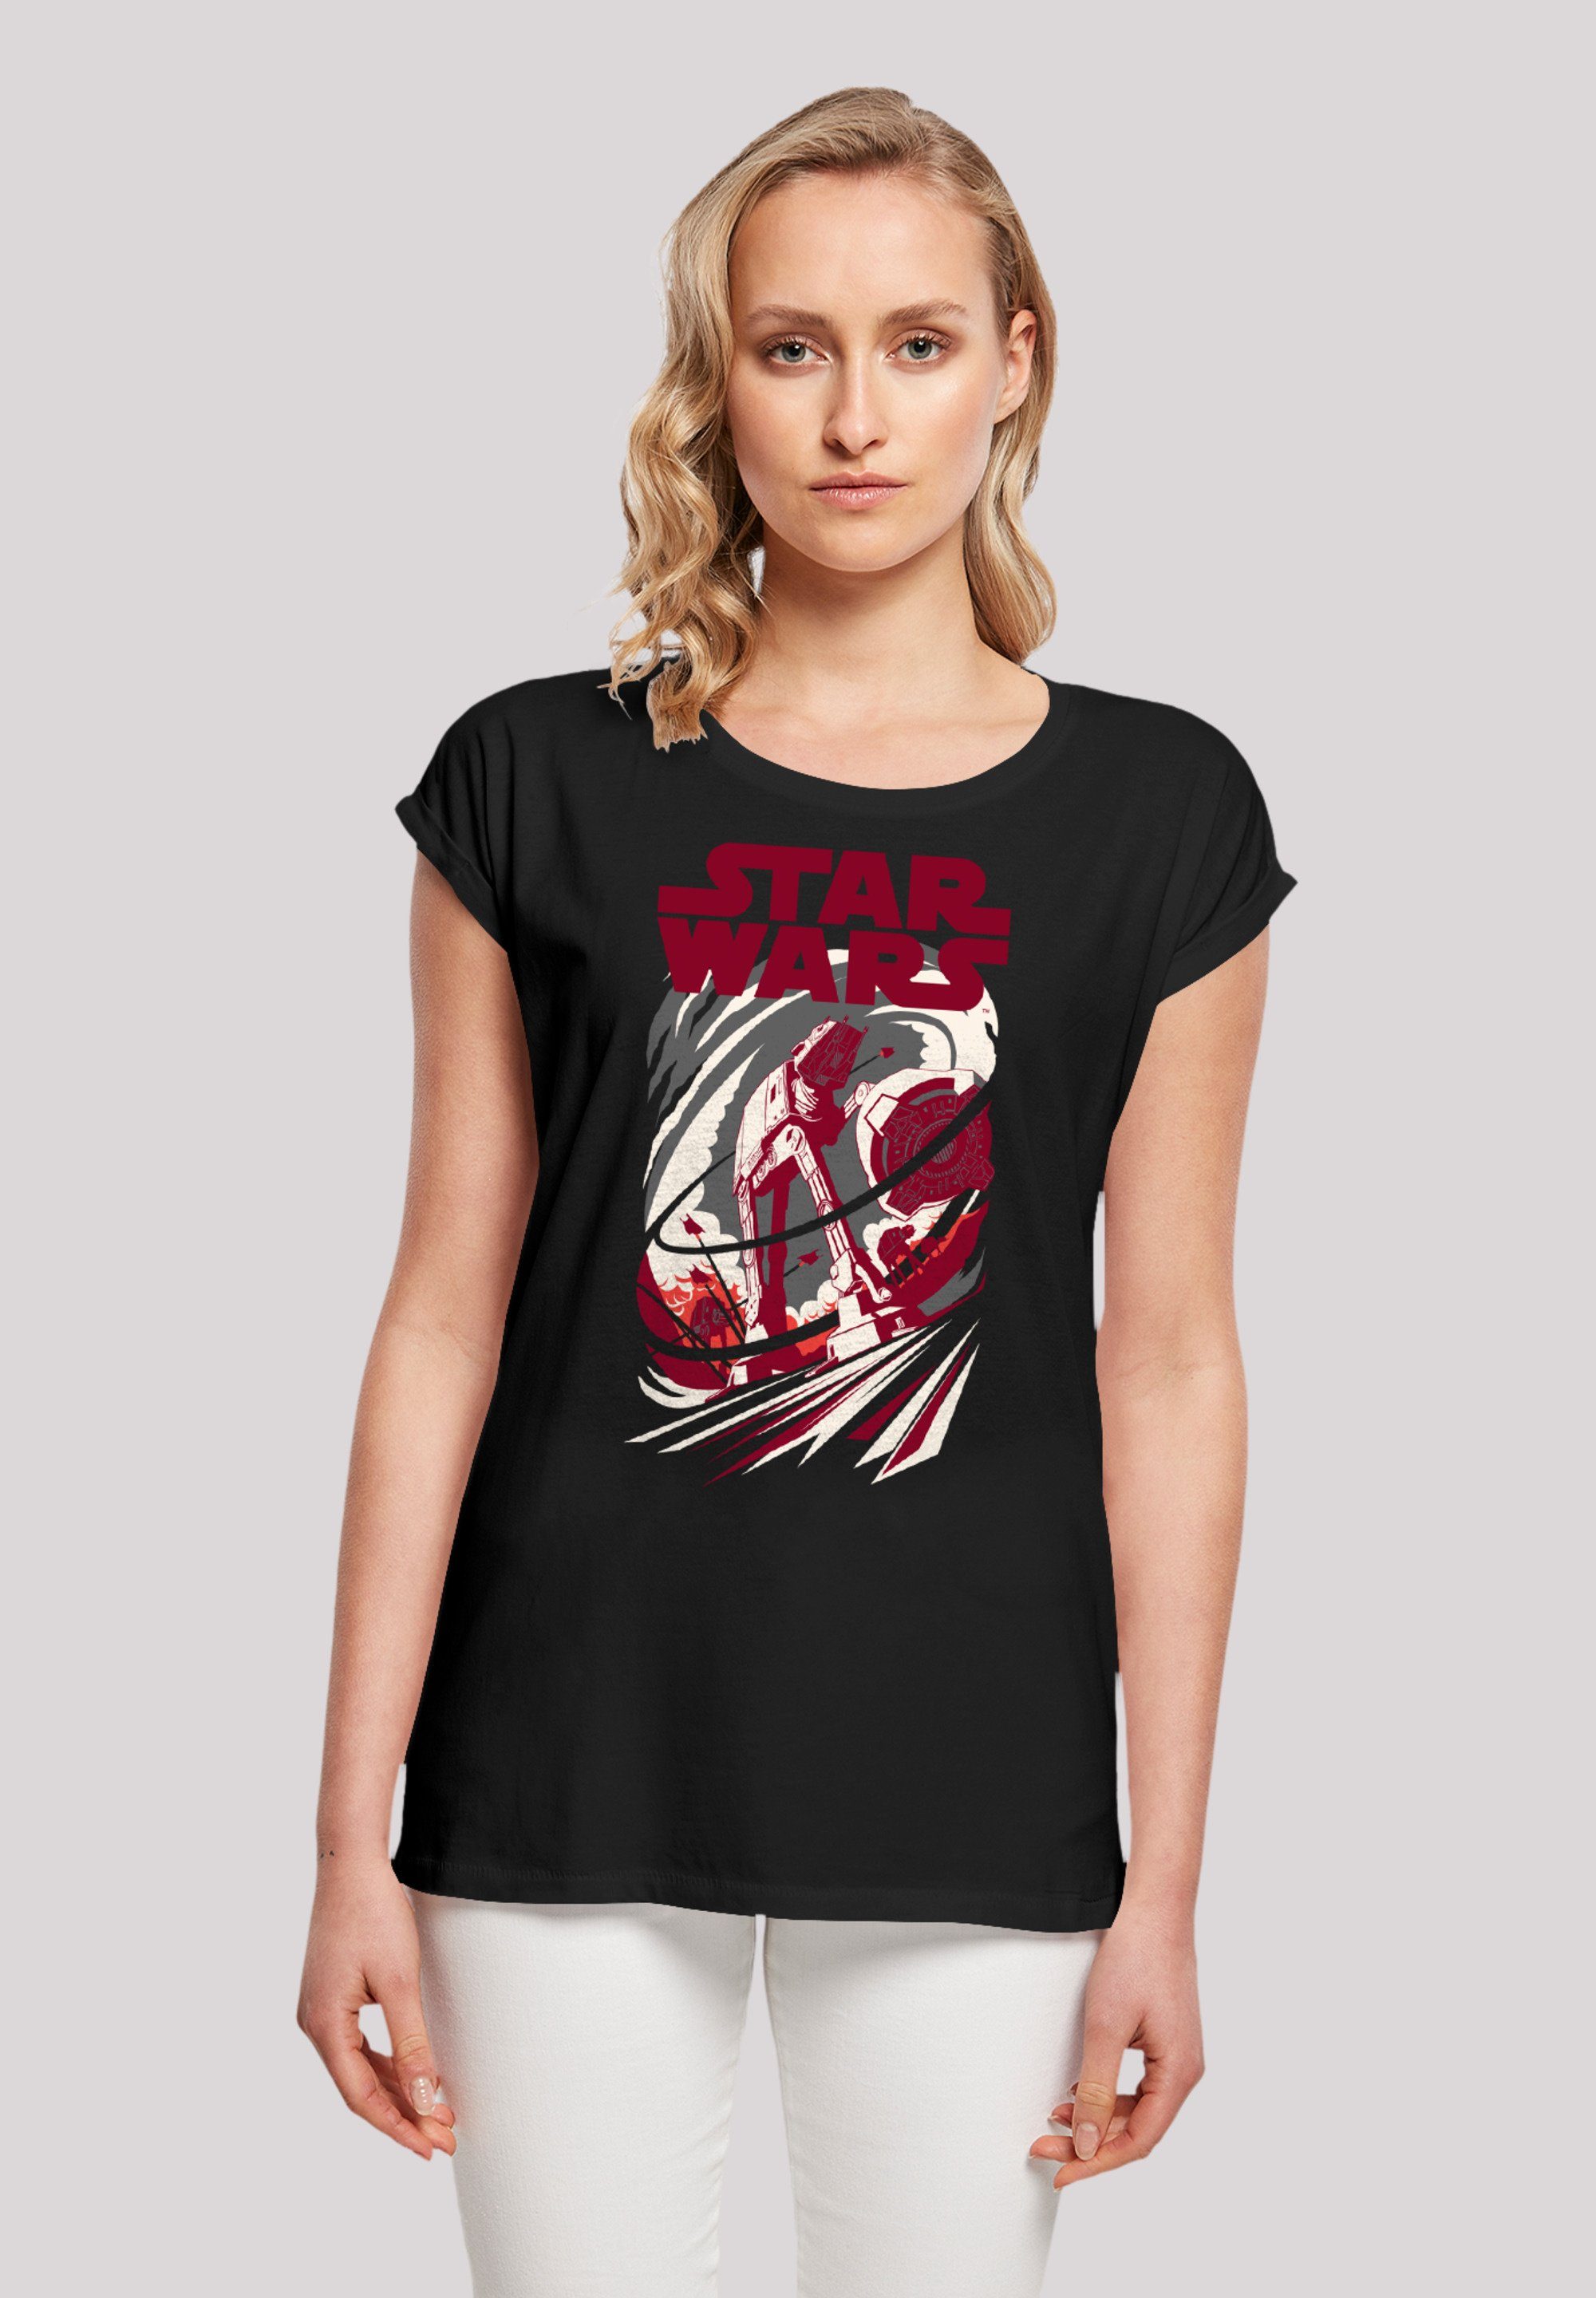 F4NT4STIC T-Shirt Star Wars Turmoil Premium Qualität schwarz